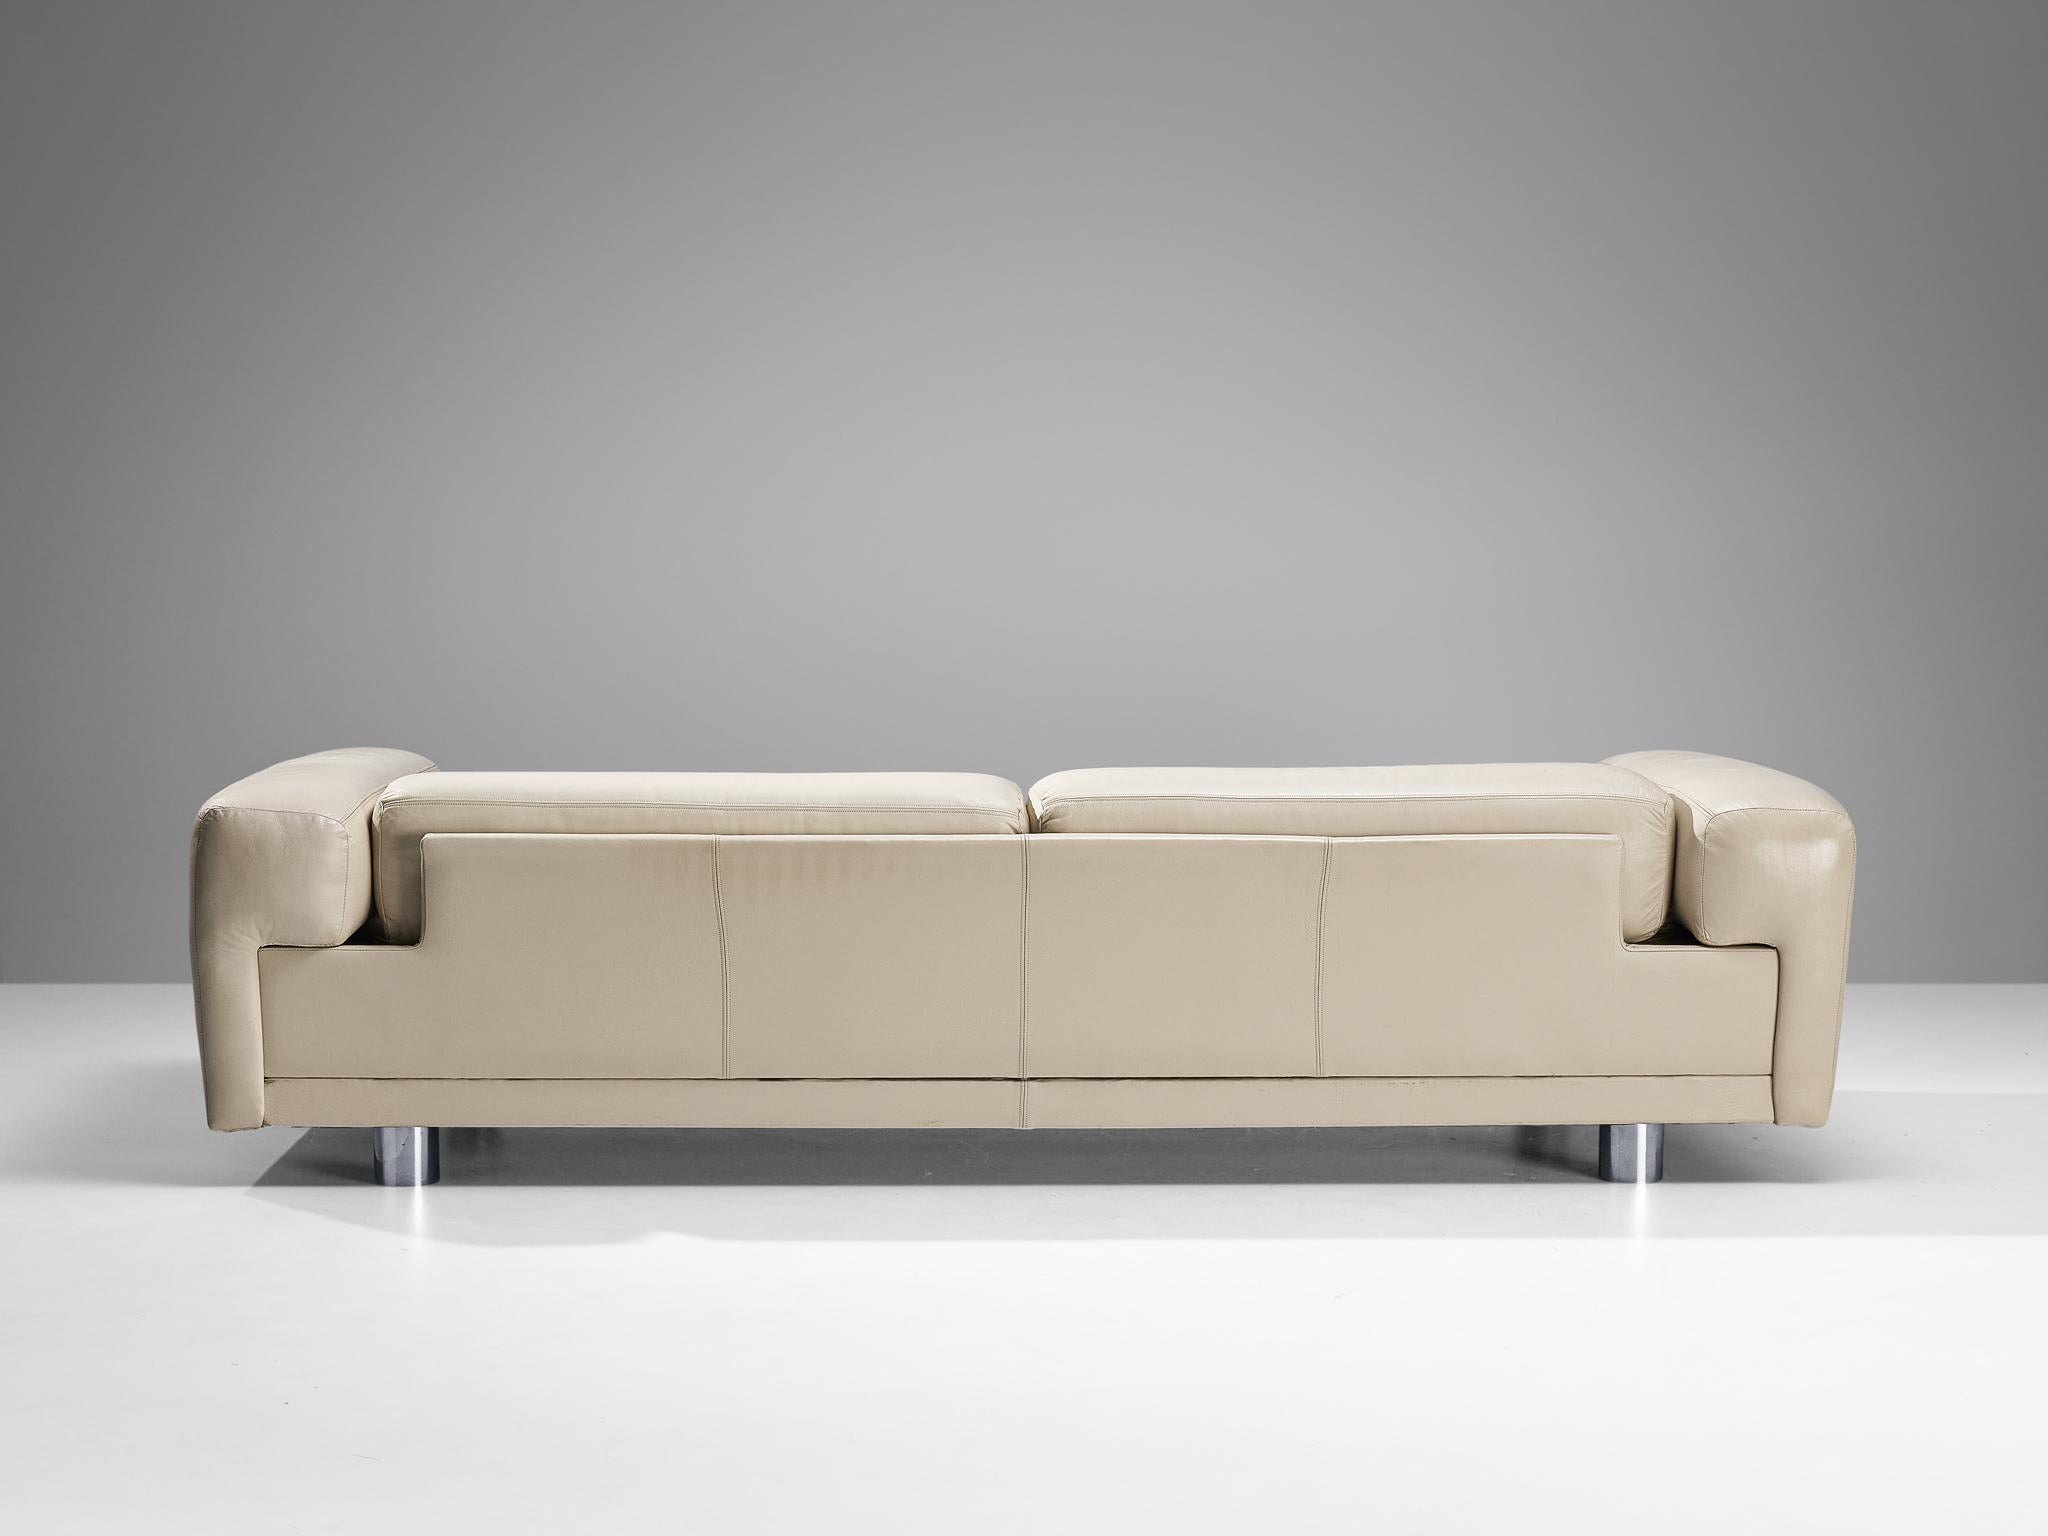 Steel Howard Keith 'Diplomat' Sofa in Beige Leather 